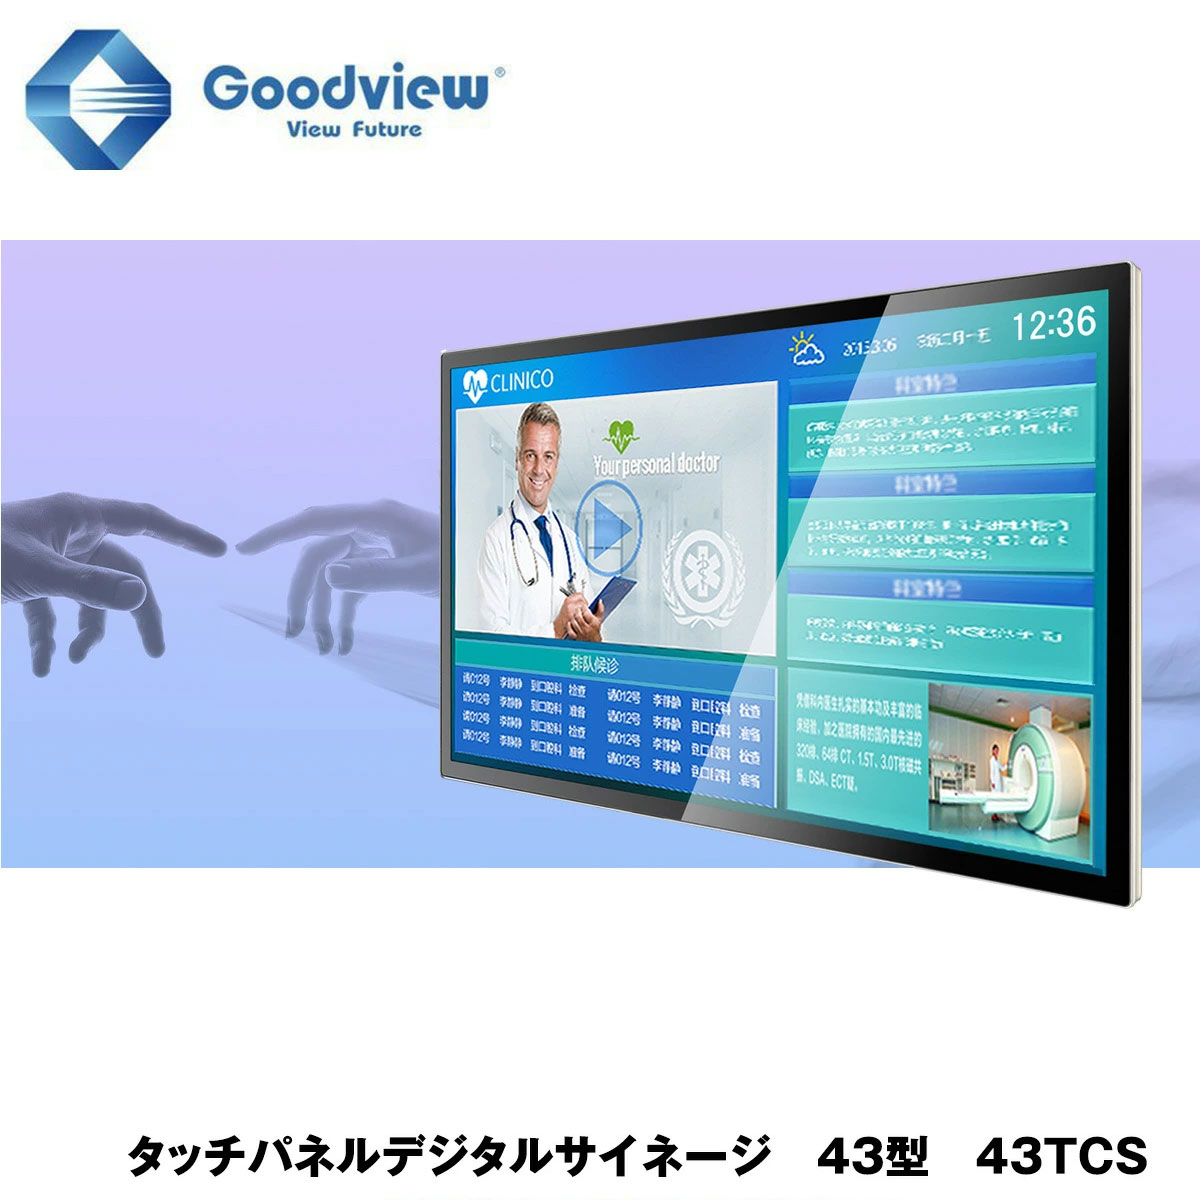 Goodview デジタルサイネージ タッチパネルサイネージ 450カンデラ 43型【43TCS】